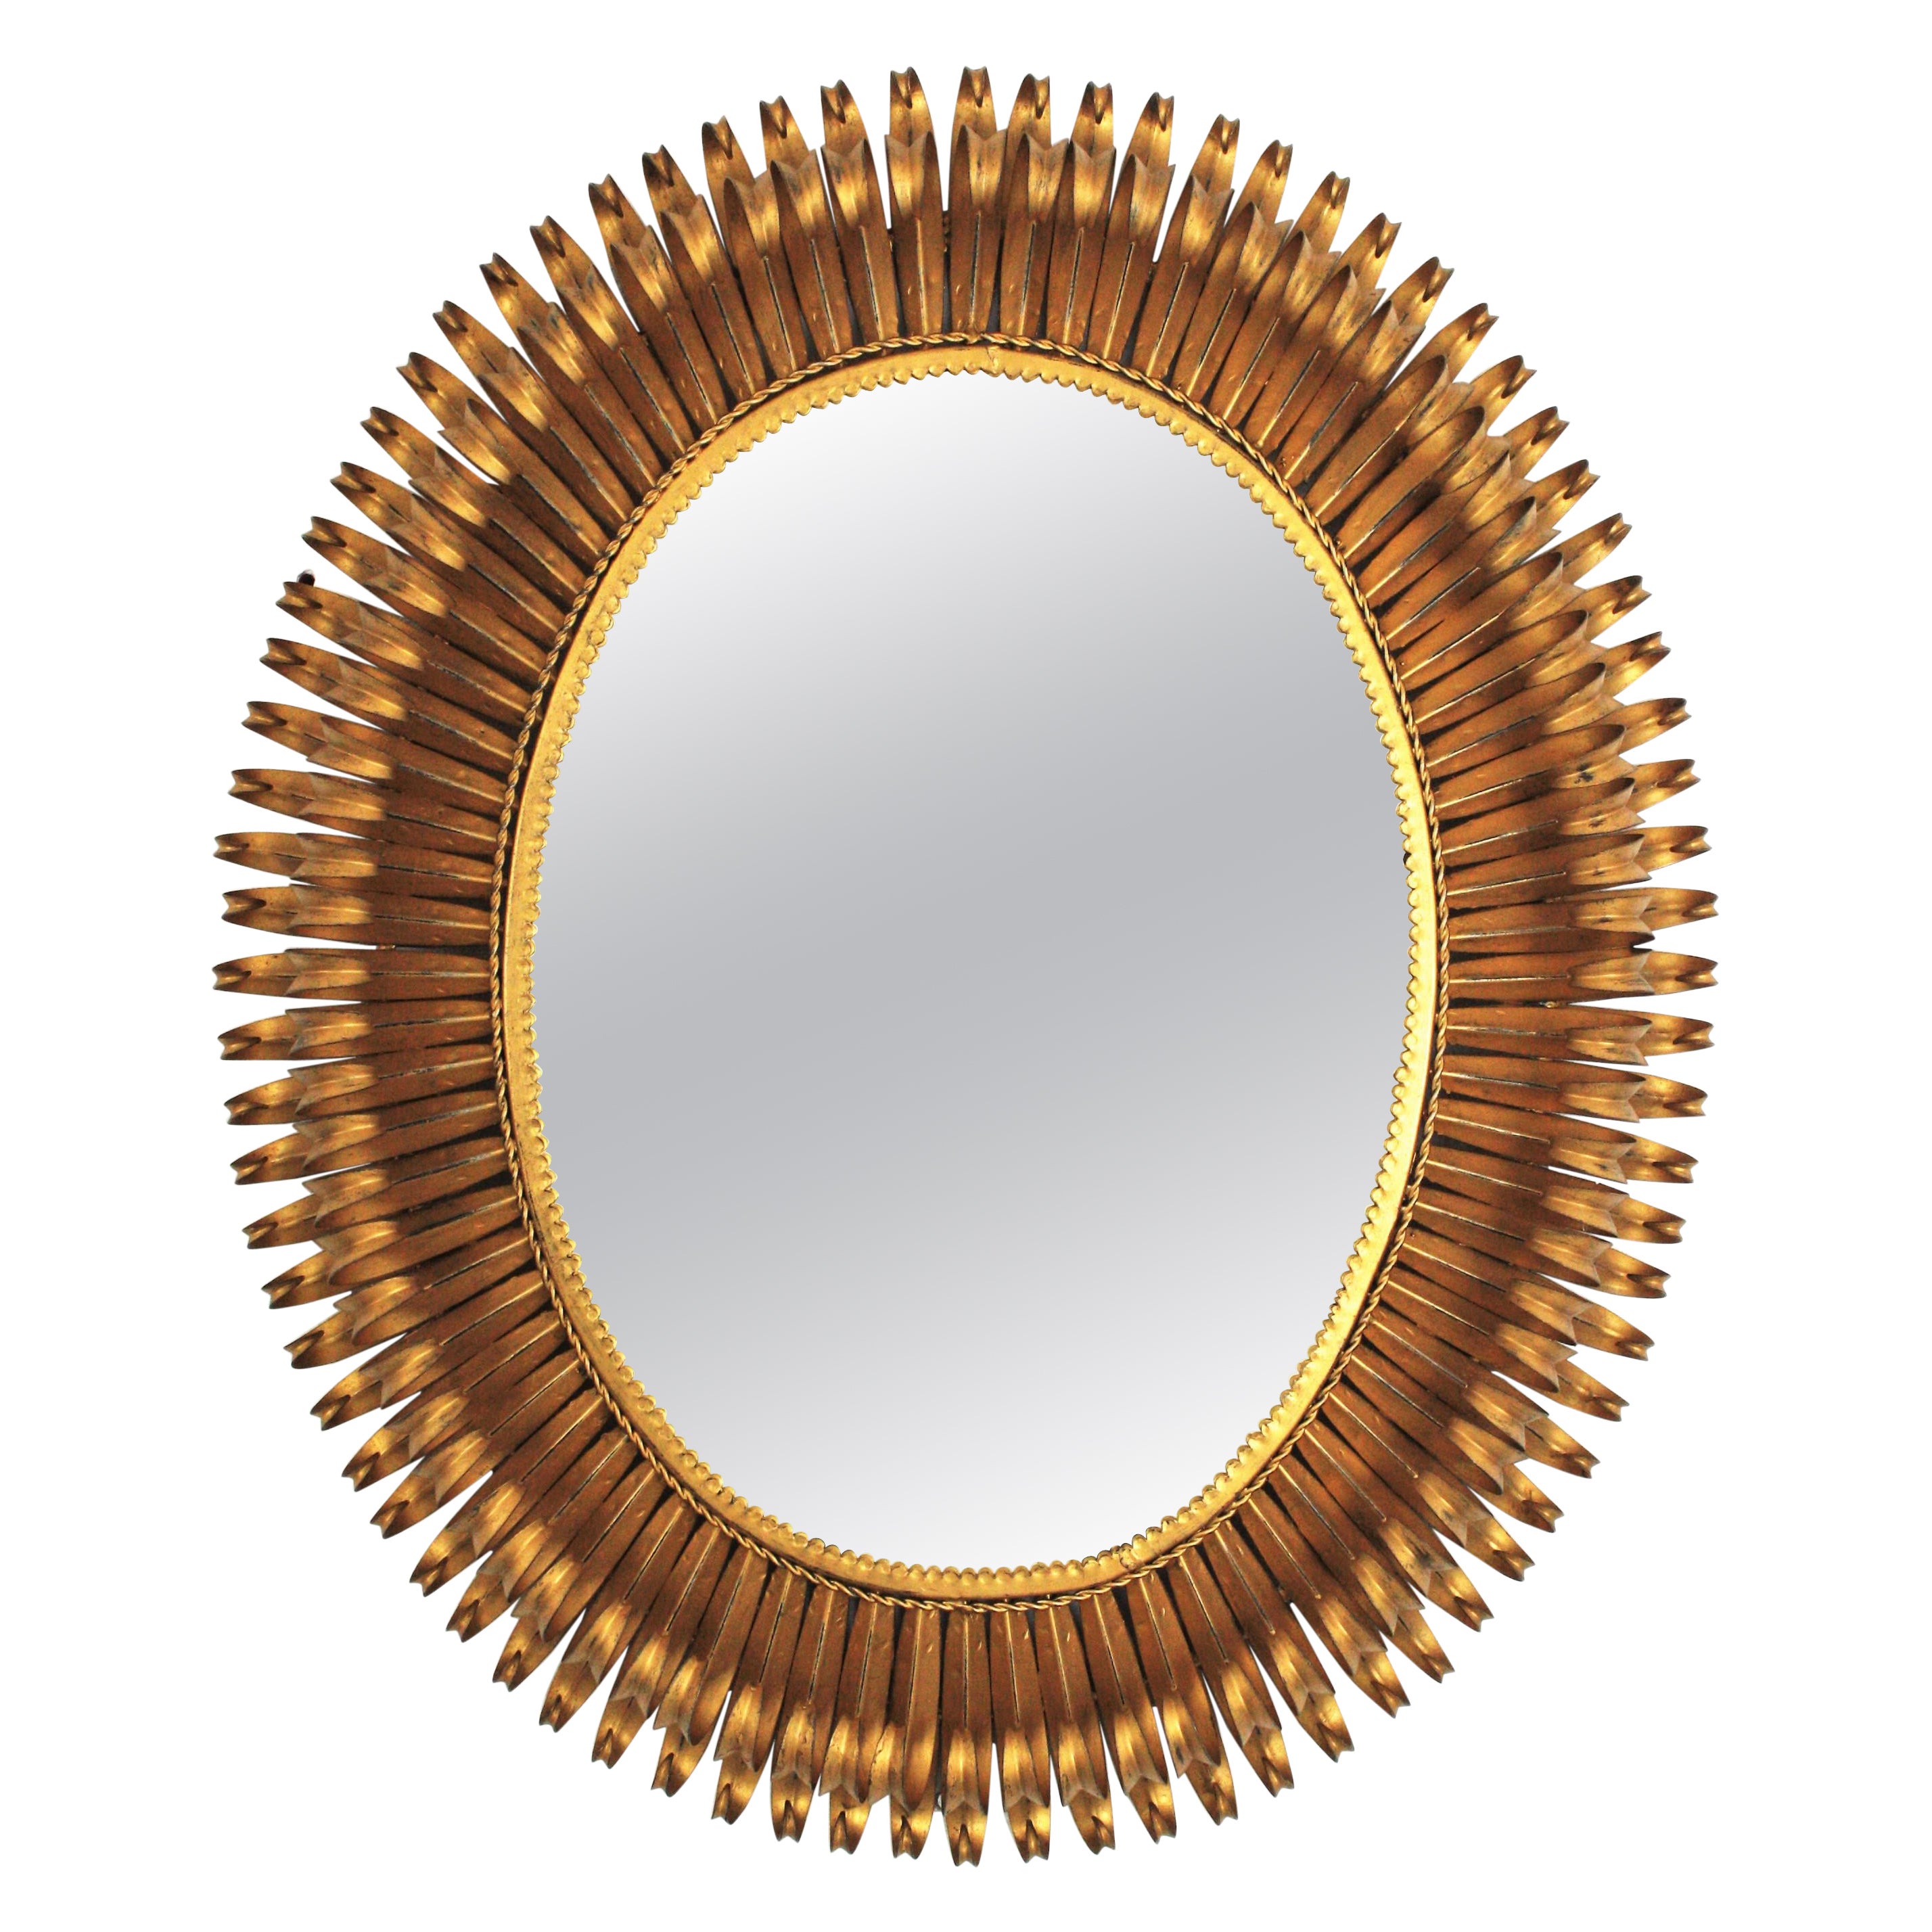 Sunburst Eyelash Large Oval Mirror in Gilt Wrought Iron